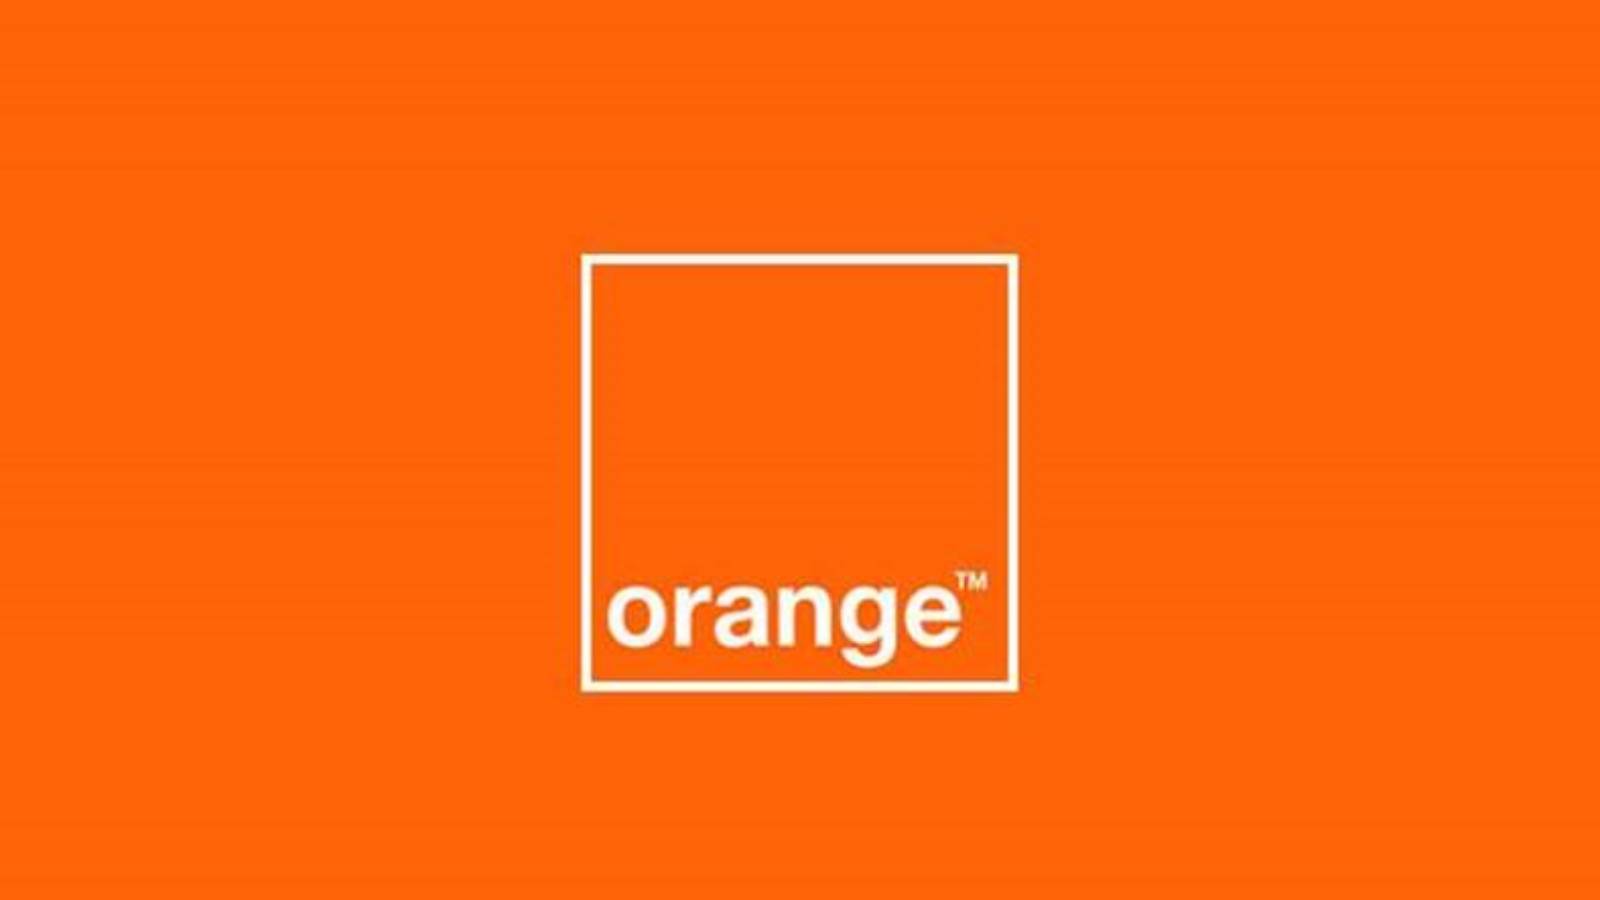 orange gratis spil applikation